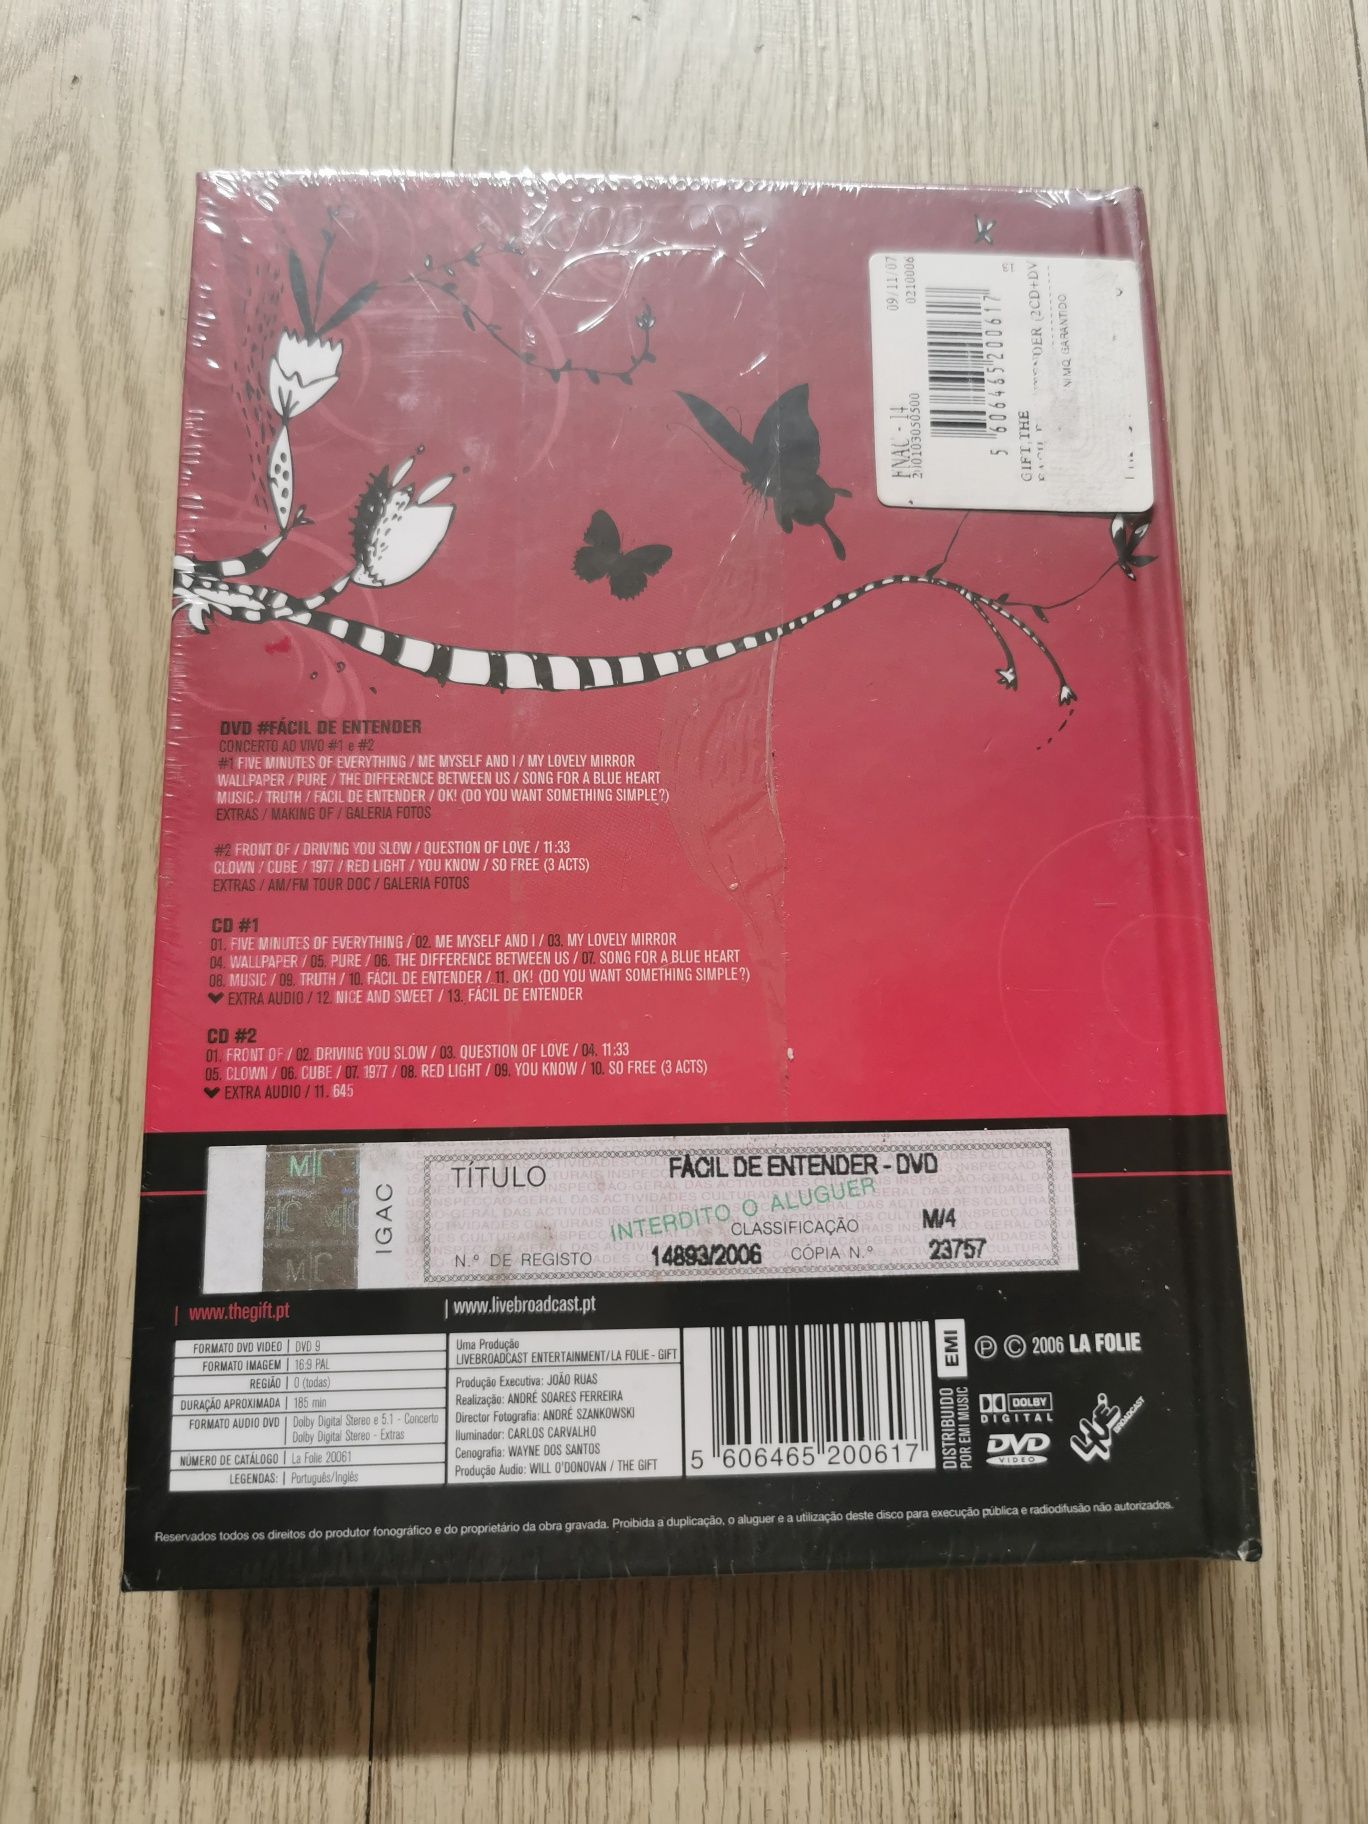 The Gift - Duplo álbum + DVD